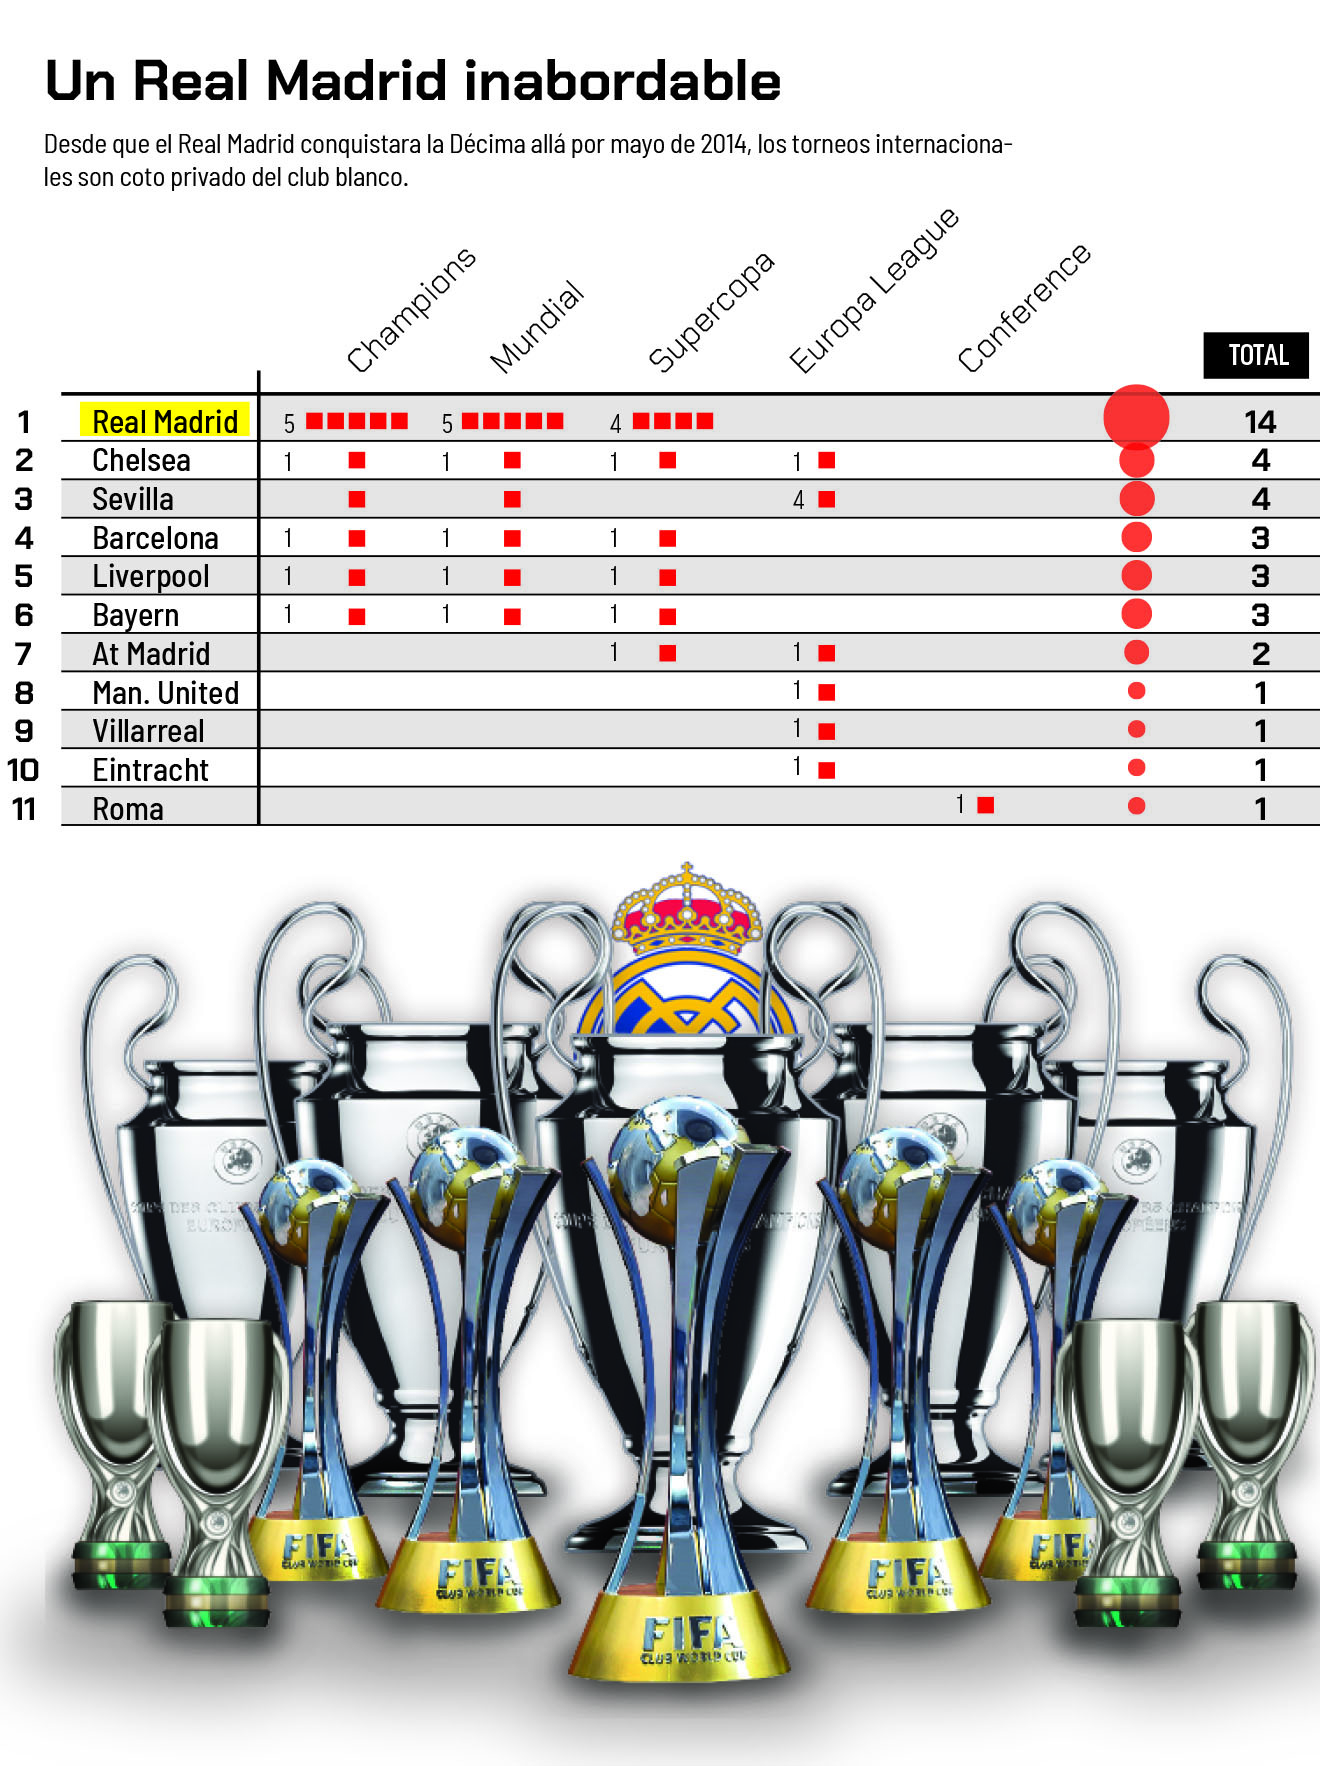 Real Madrid El Real Madrid arrasa en el mundo desde 2014 14 títulos